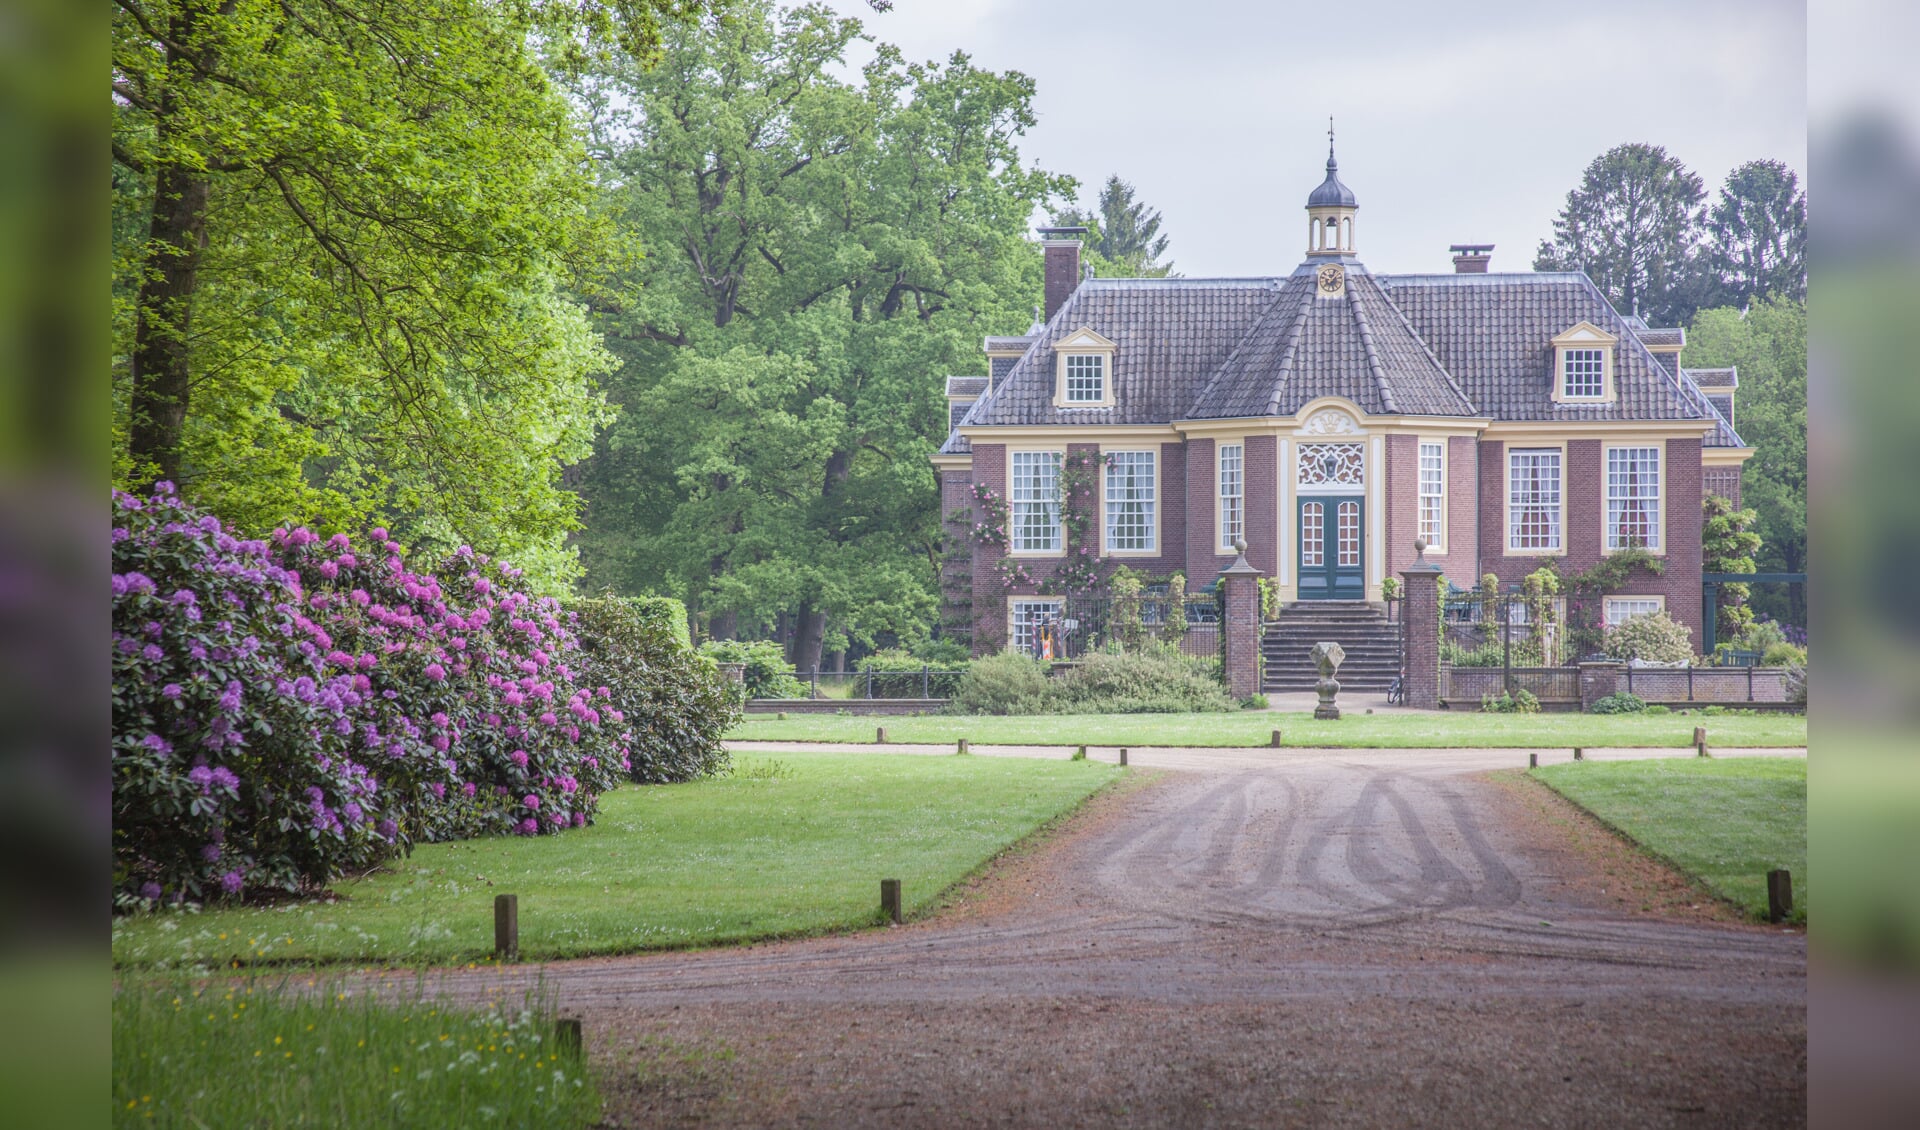 De rijksmonumentale tuinen van Landgoed De Wiersse genieten internationale faam. Foto: PR